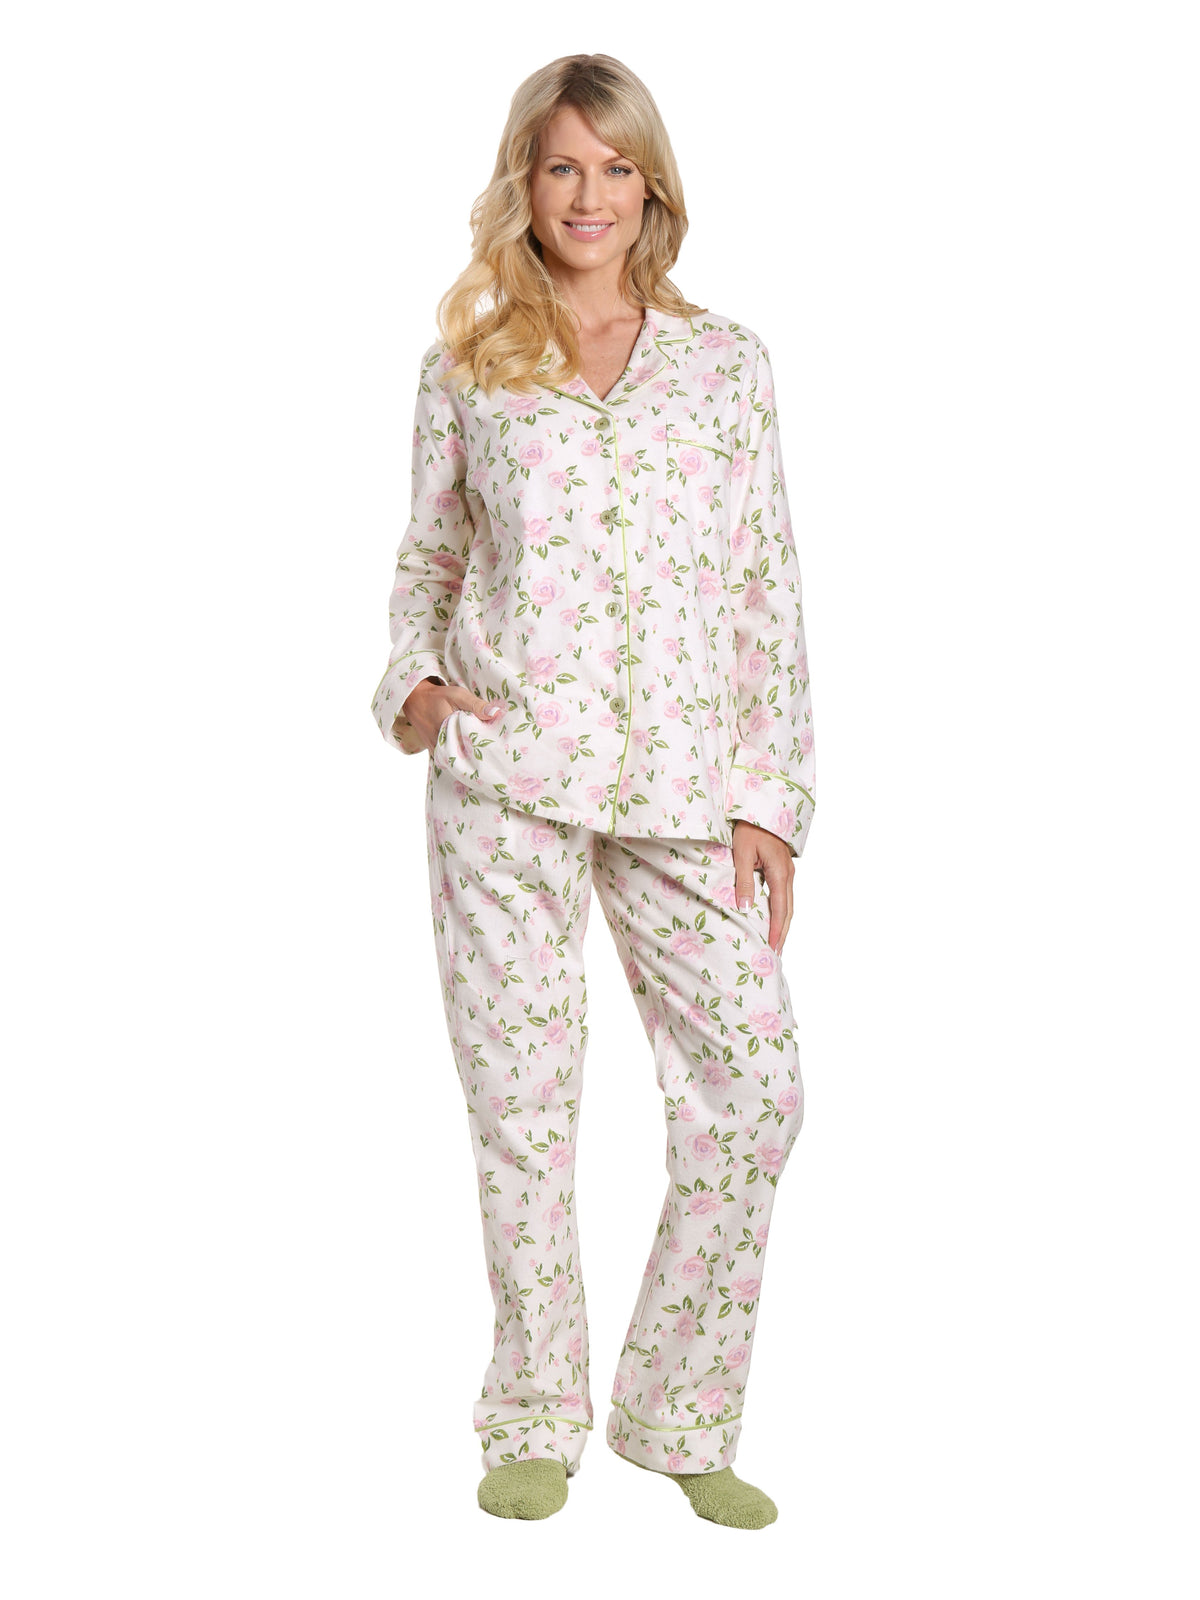 Box Packaged Women's Premium 100% Cotton Flannel Pajama Sleepwear Set - Gardenia Cream-Pink